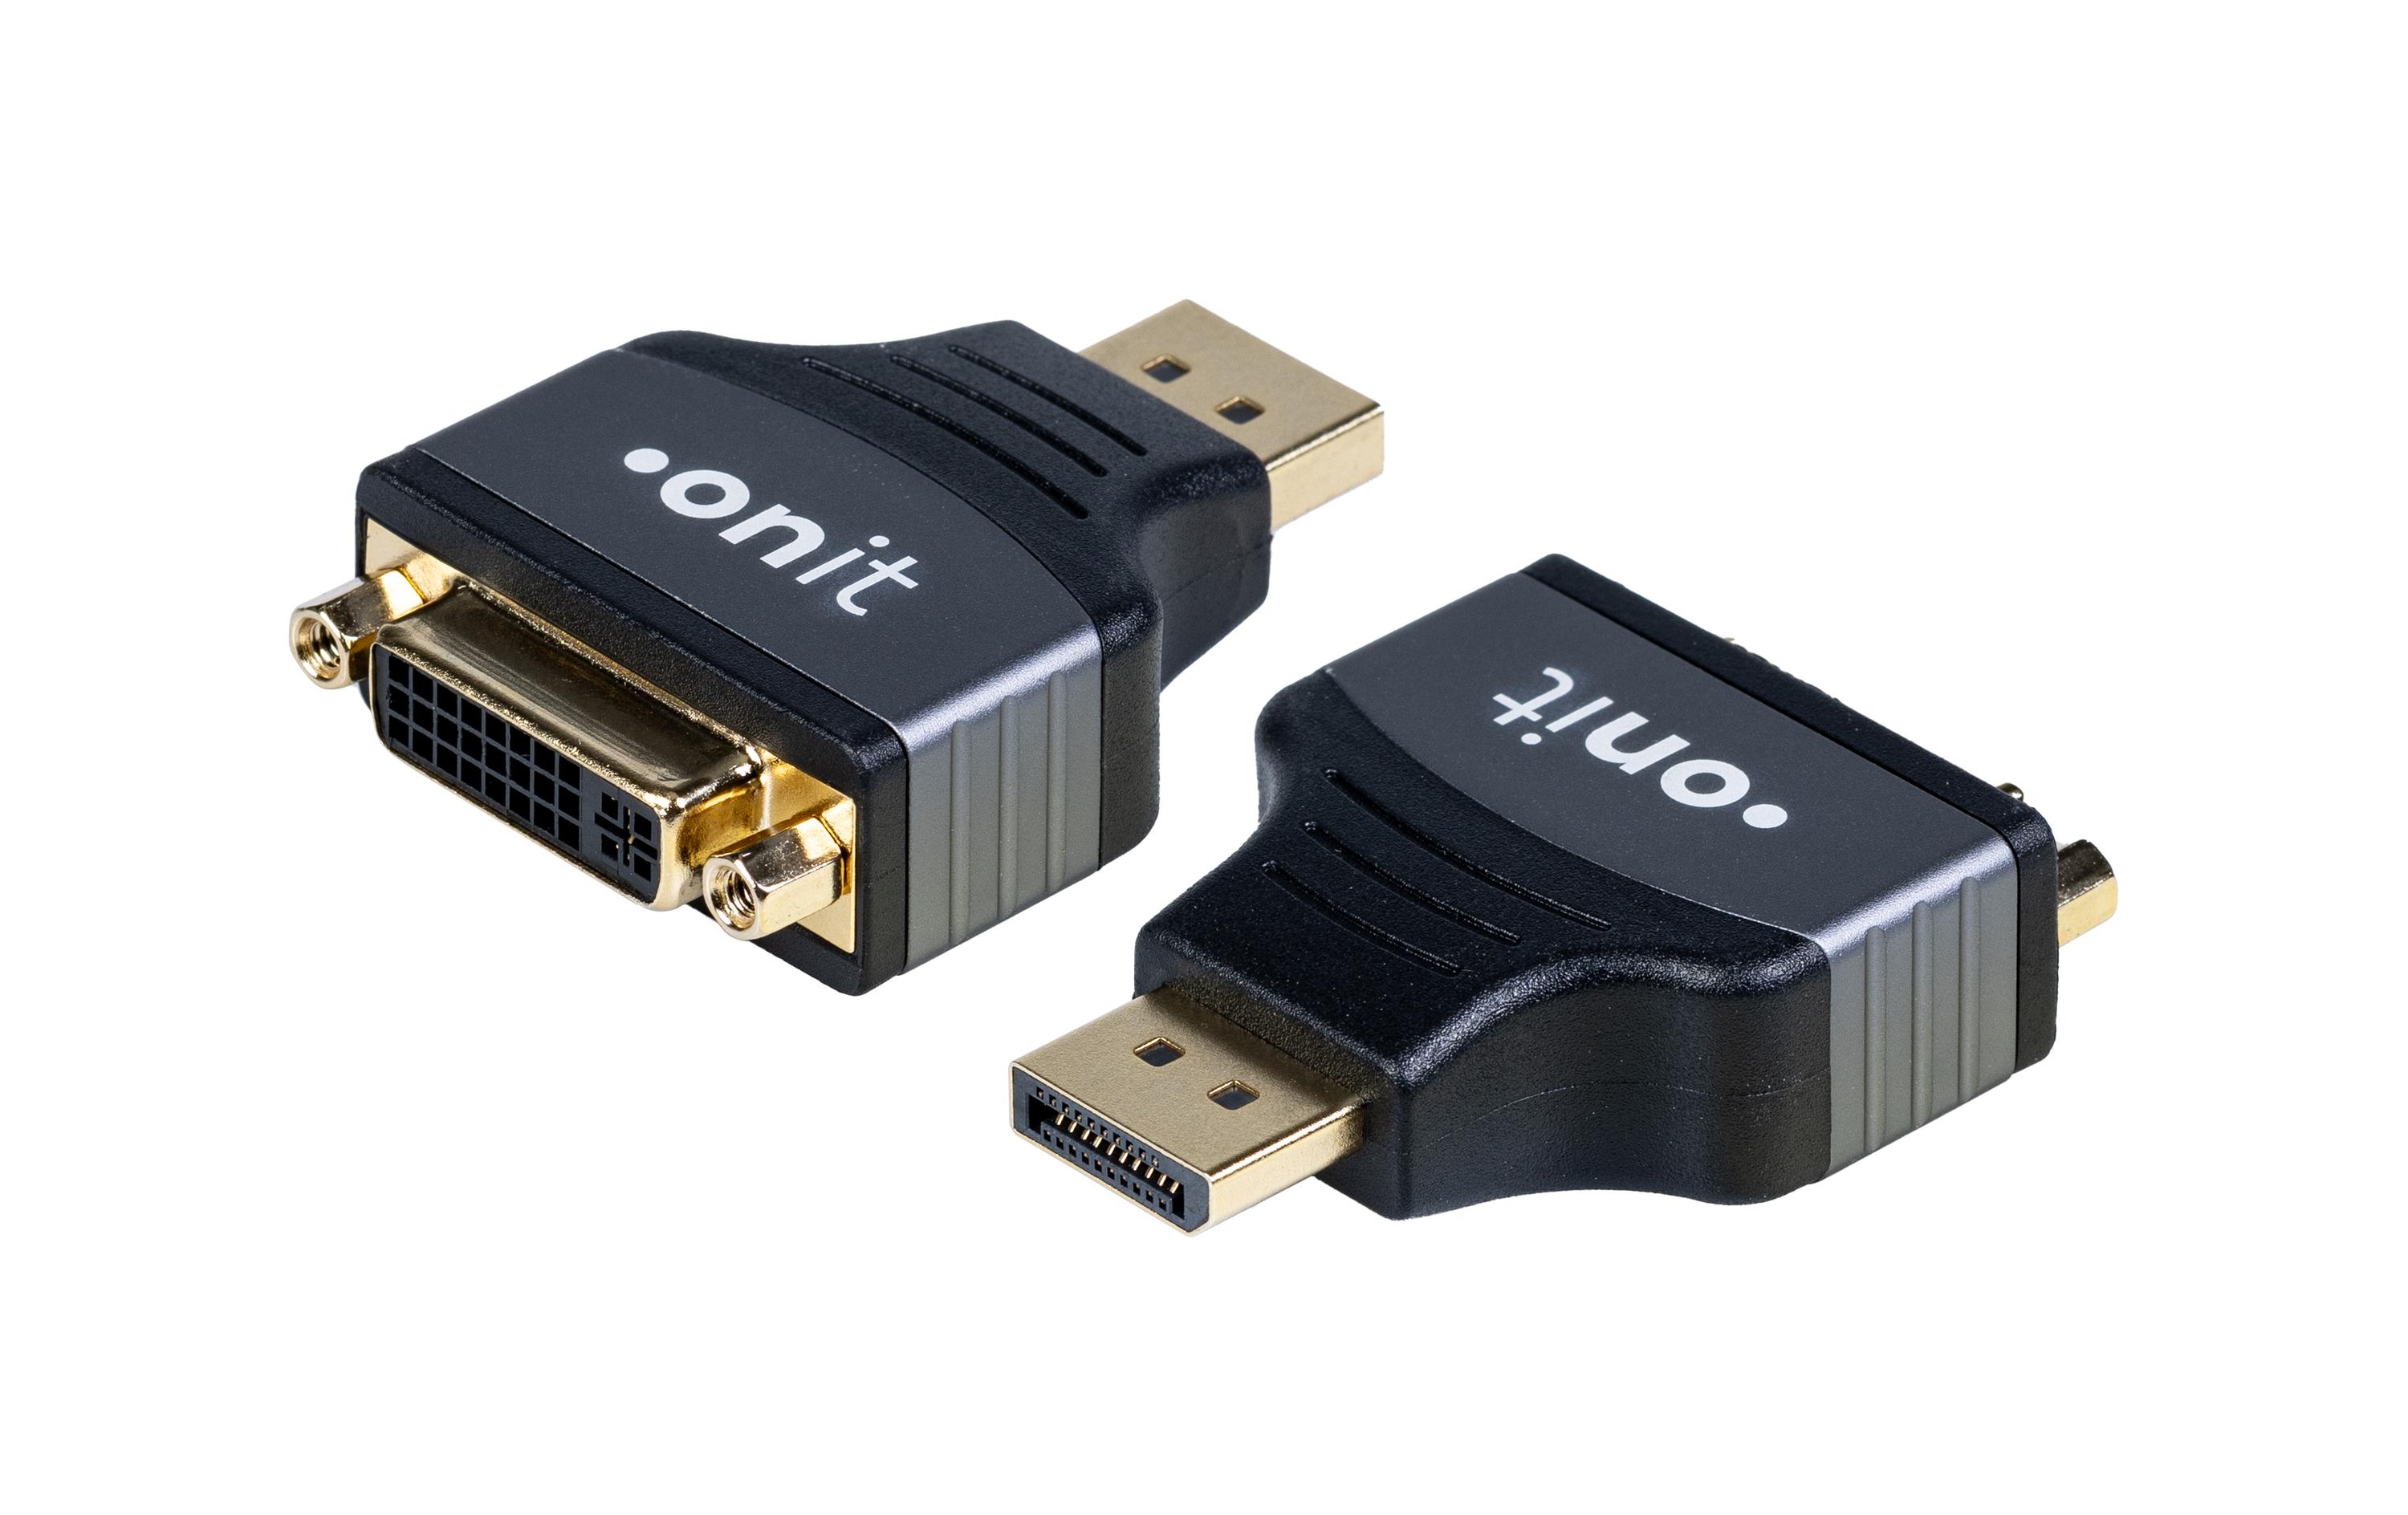 onit Adapter DisplayPort - DVI-D, 1 Stück